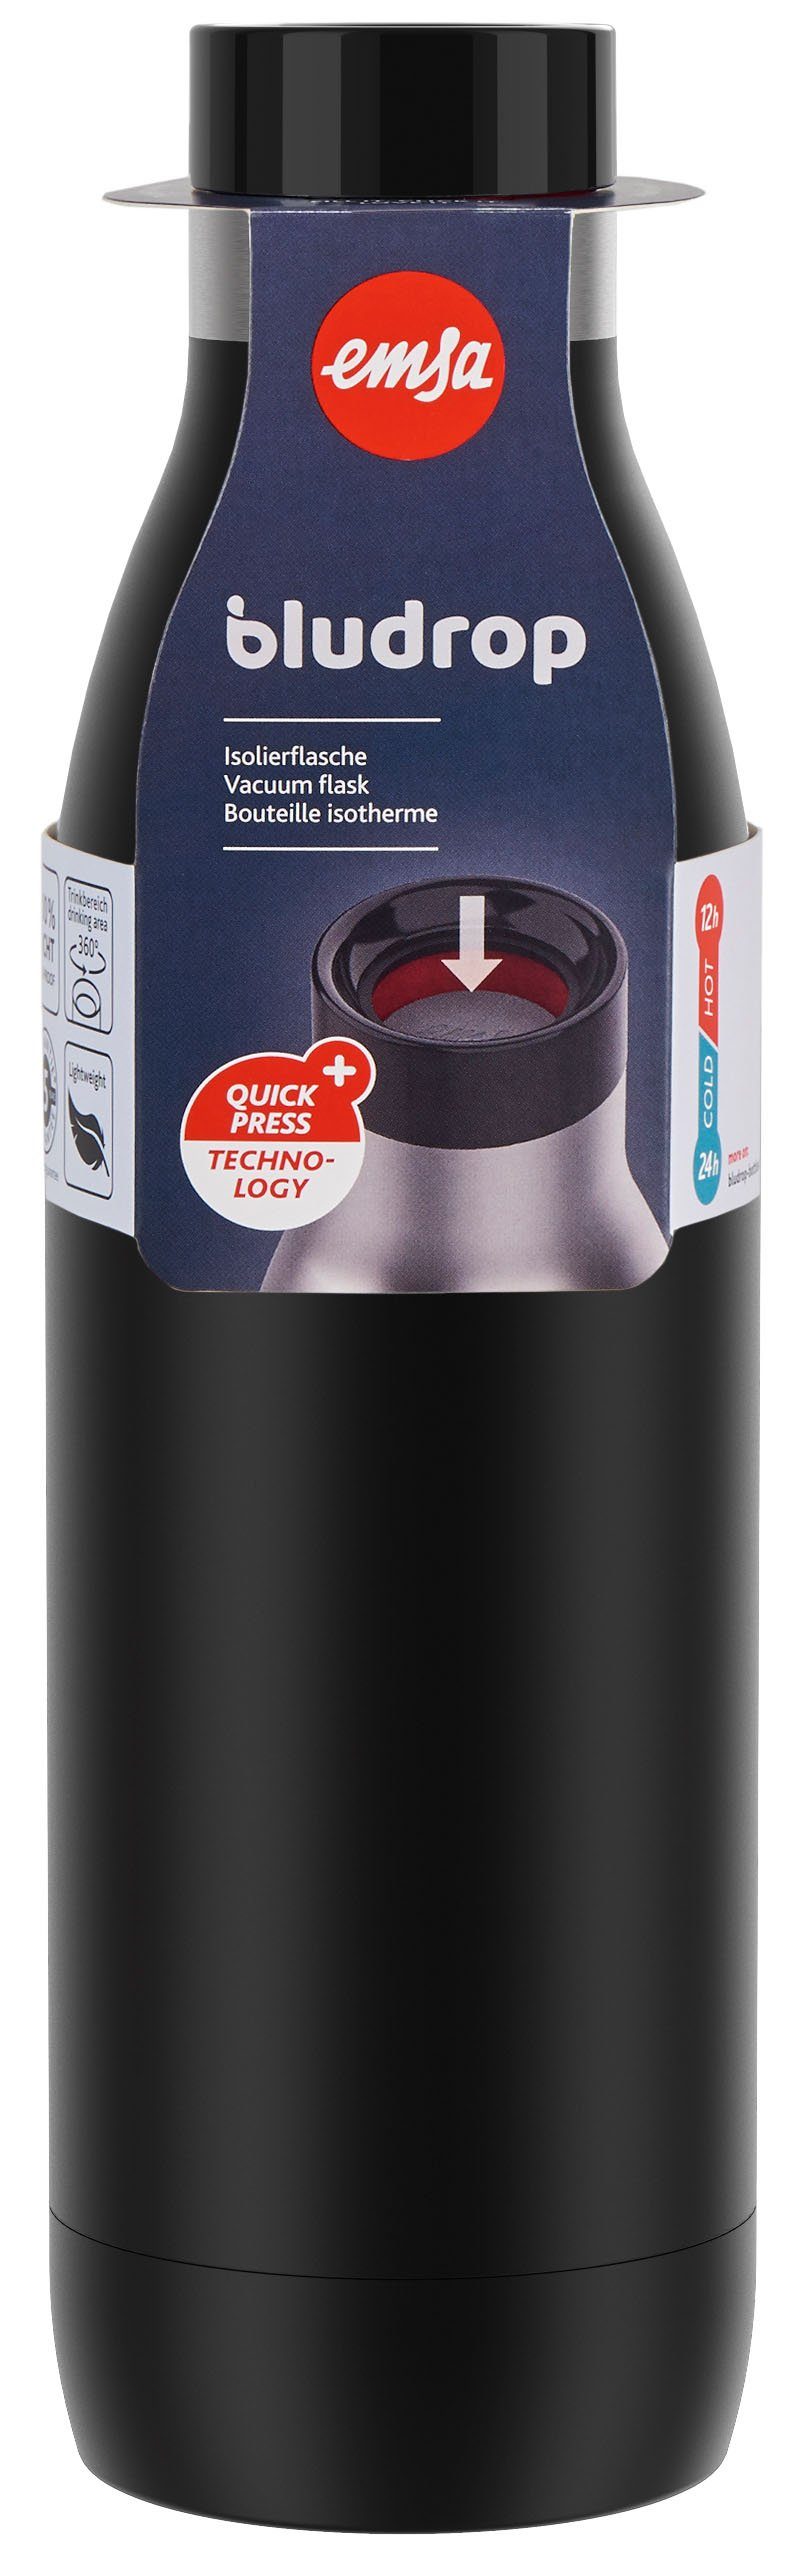 Emsa Trinkflasche Bludrop Color, warm/24h 12h Quick-Press spülmaschinenfest Edelstahl, kühl, schwarz Deckel